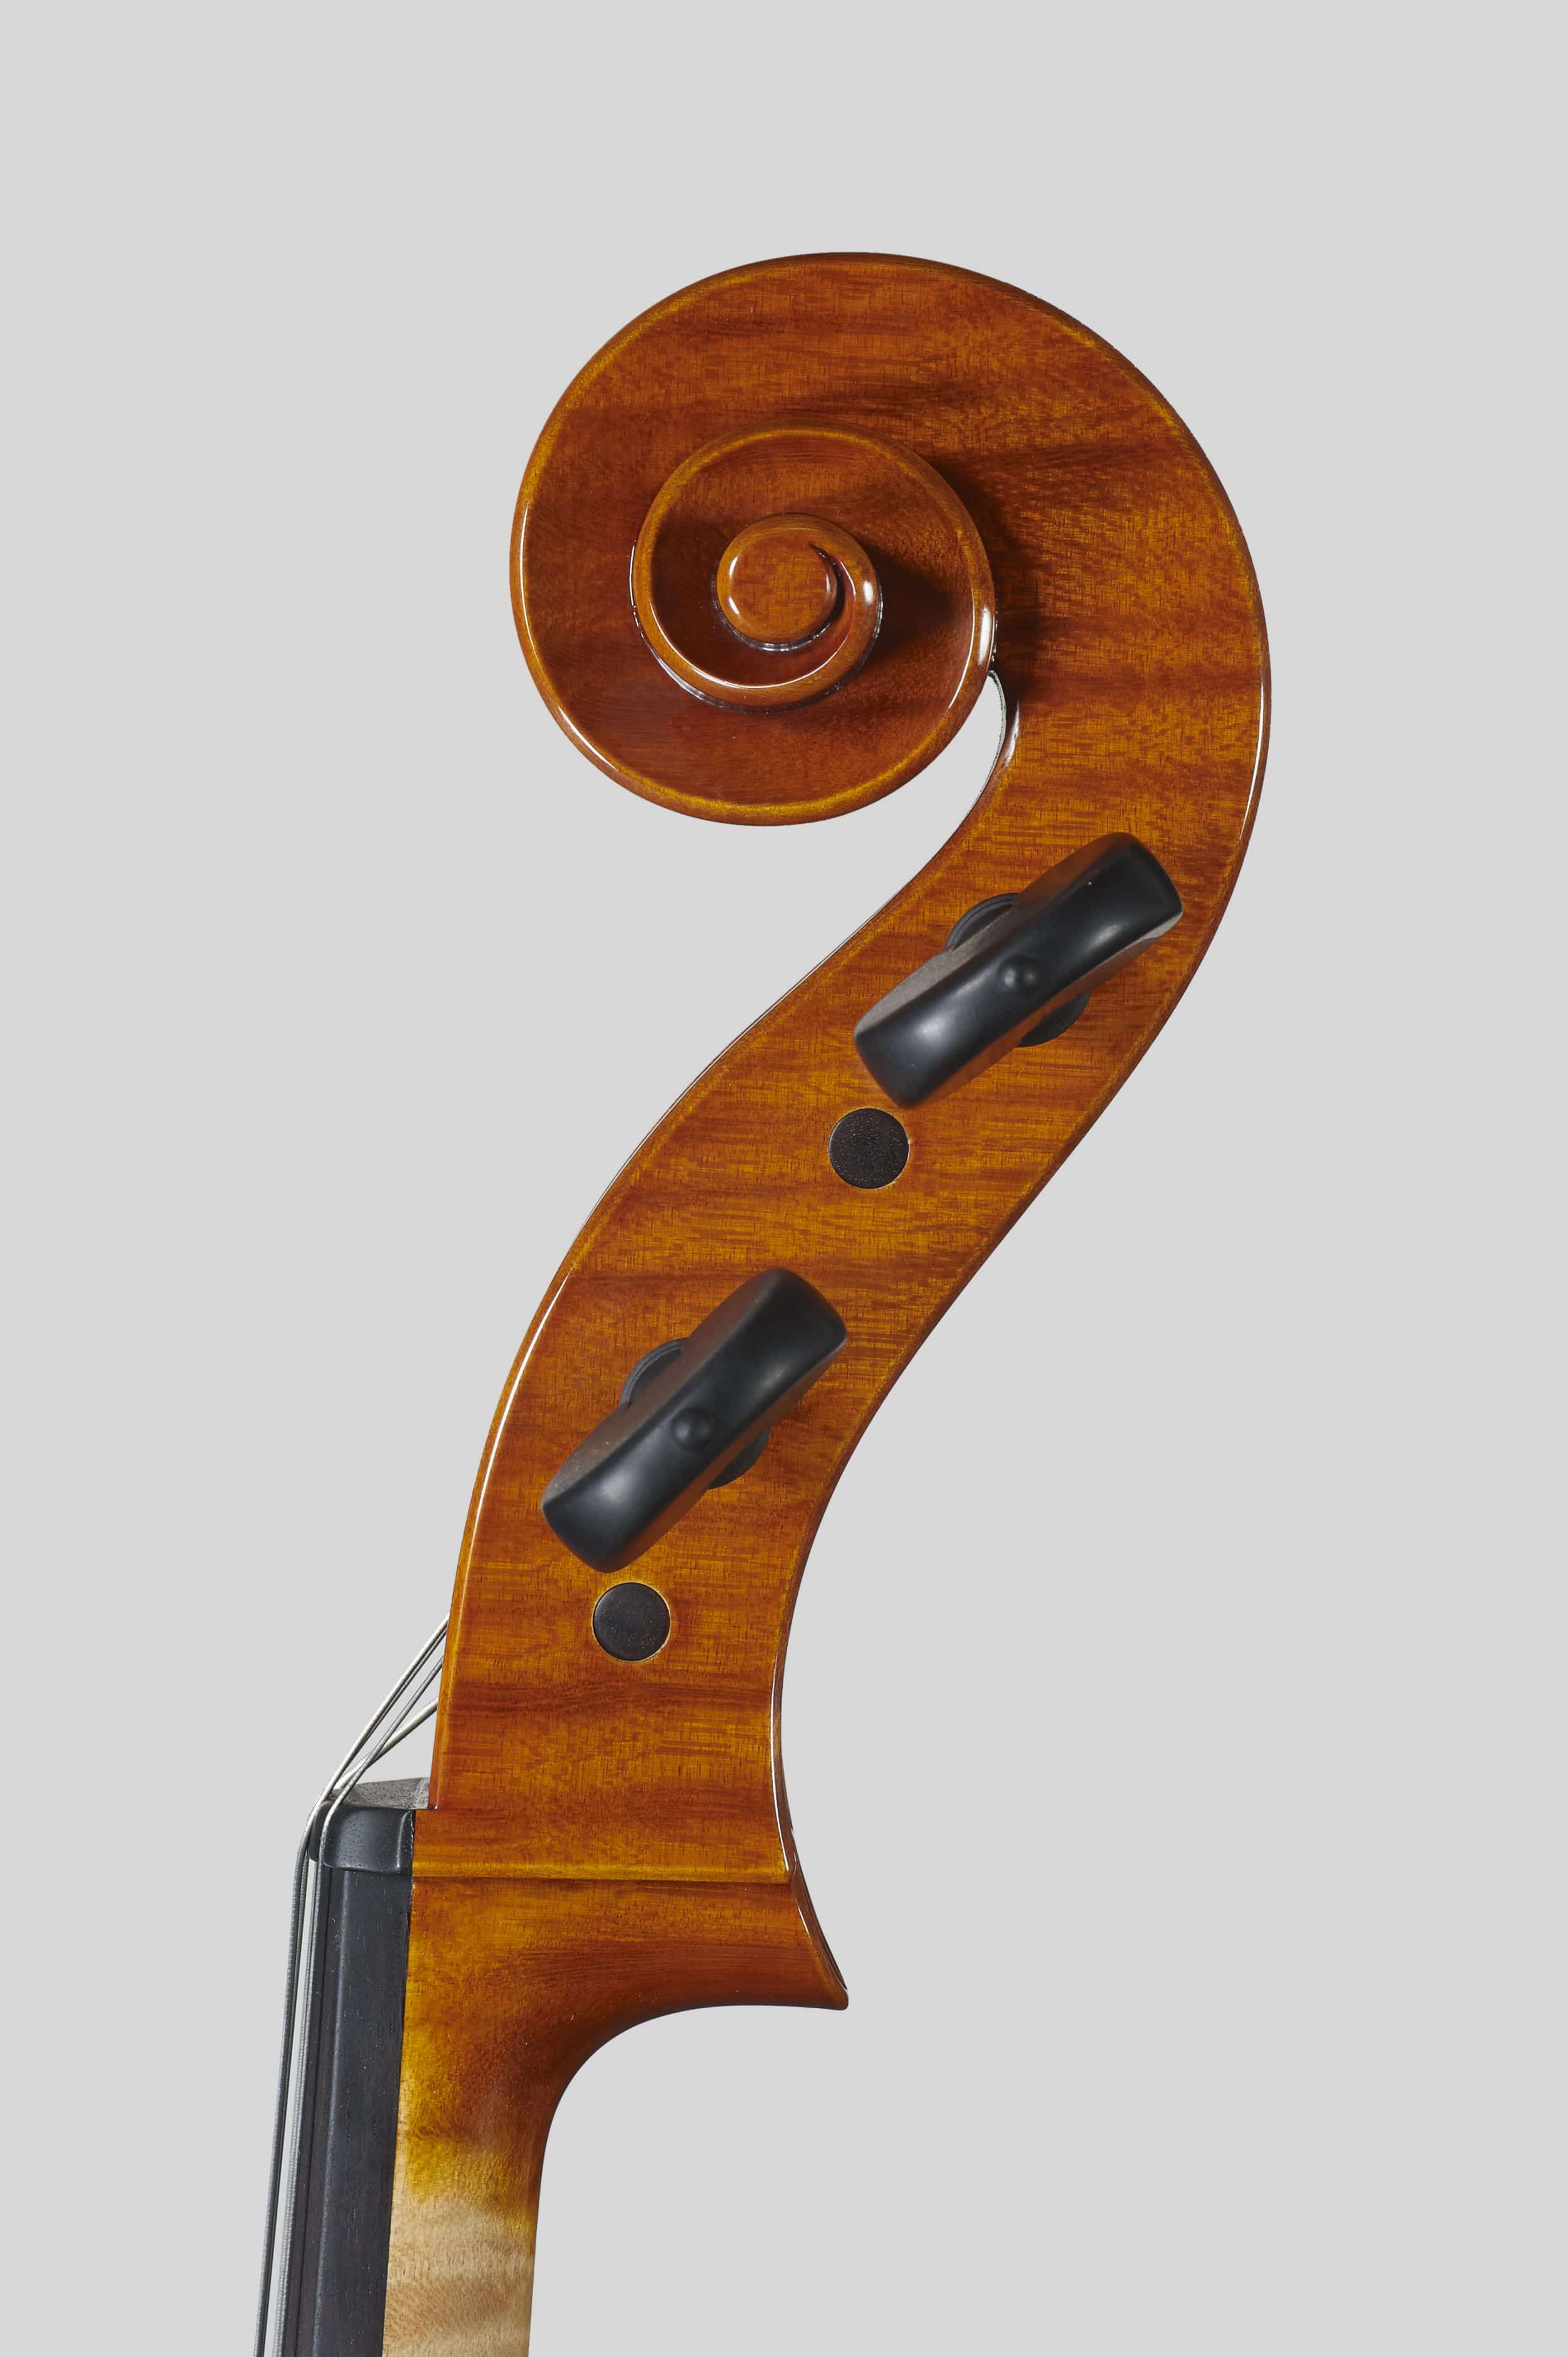 Anno 2012 – Violoncello modello stile A. Stradivari “forma B” - “Mara” 1711 - Testa destra